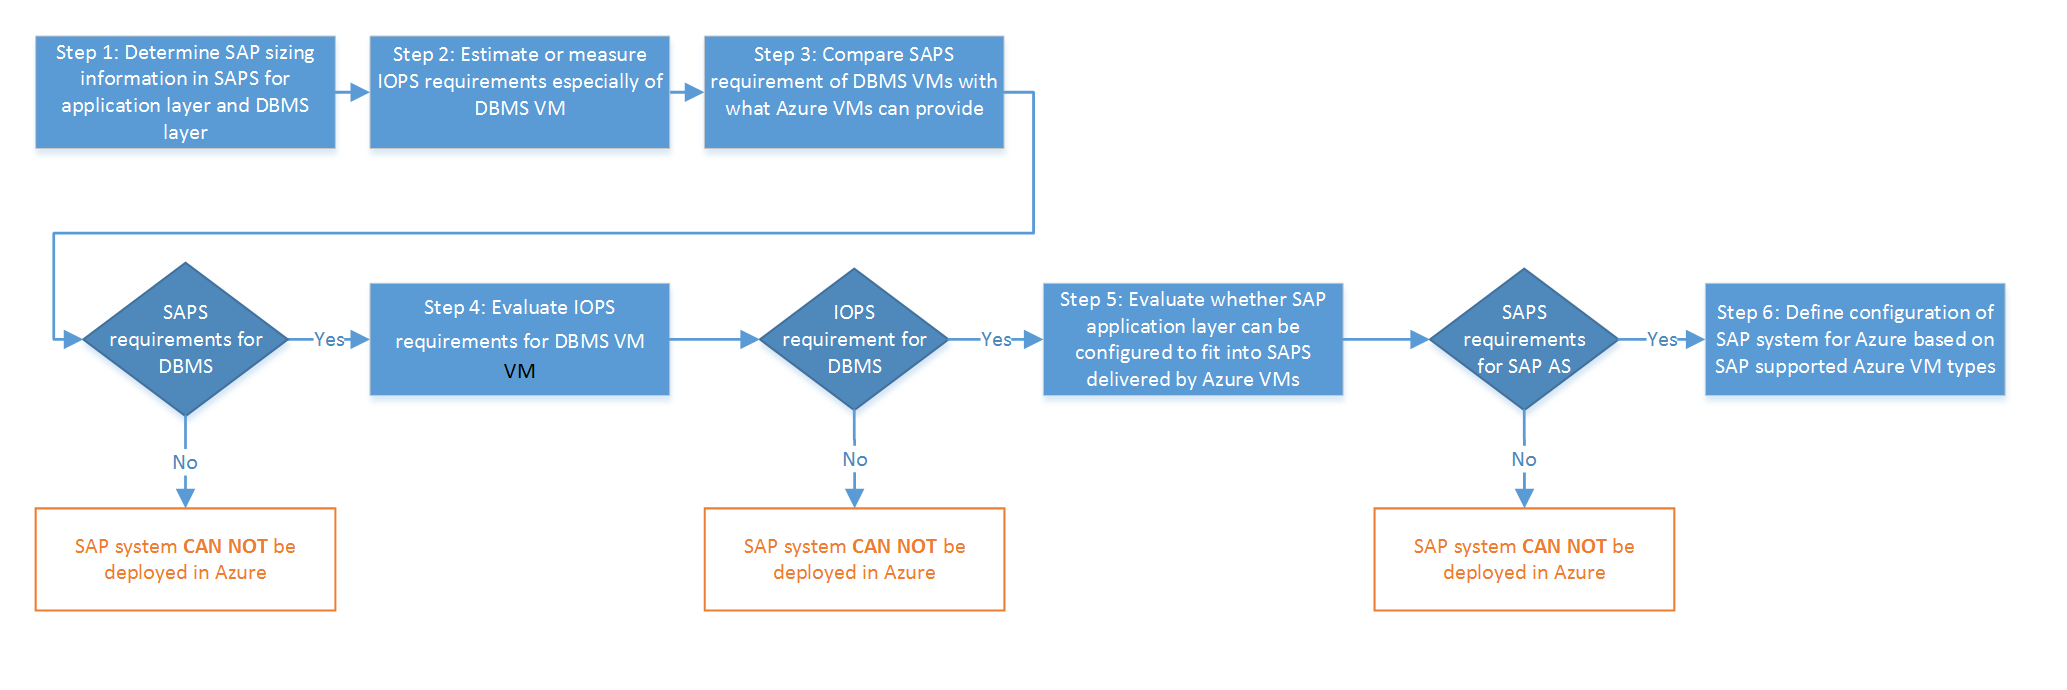 Albero delle decisioni relativo alla possibilità di distribuire SAP in Azure